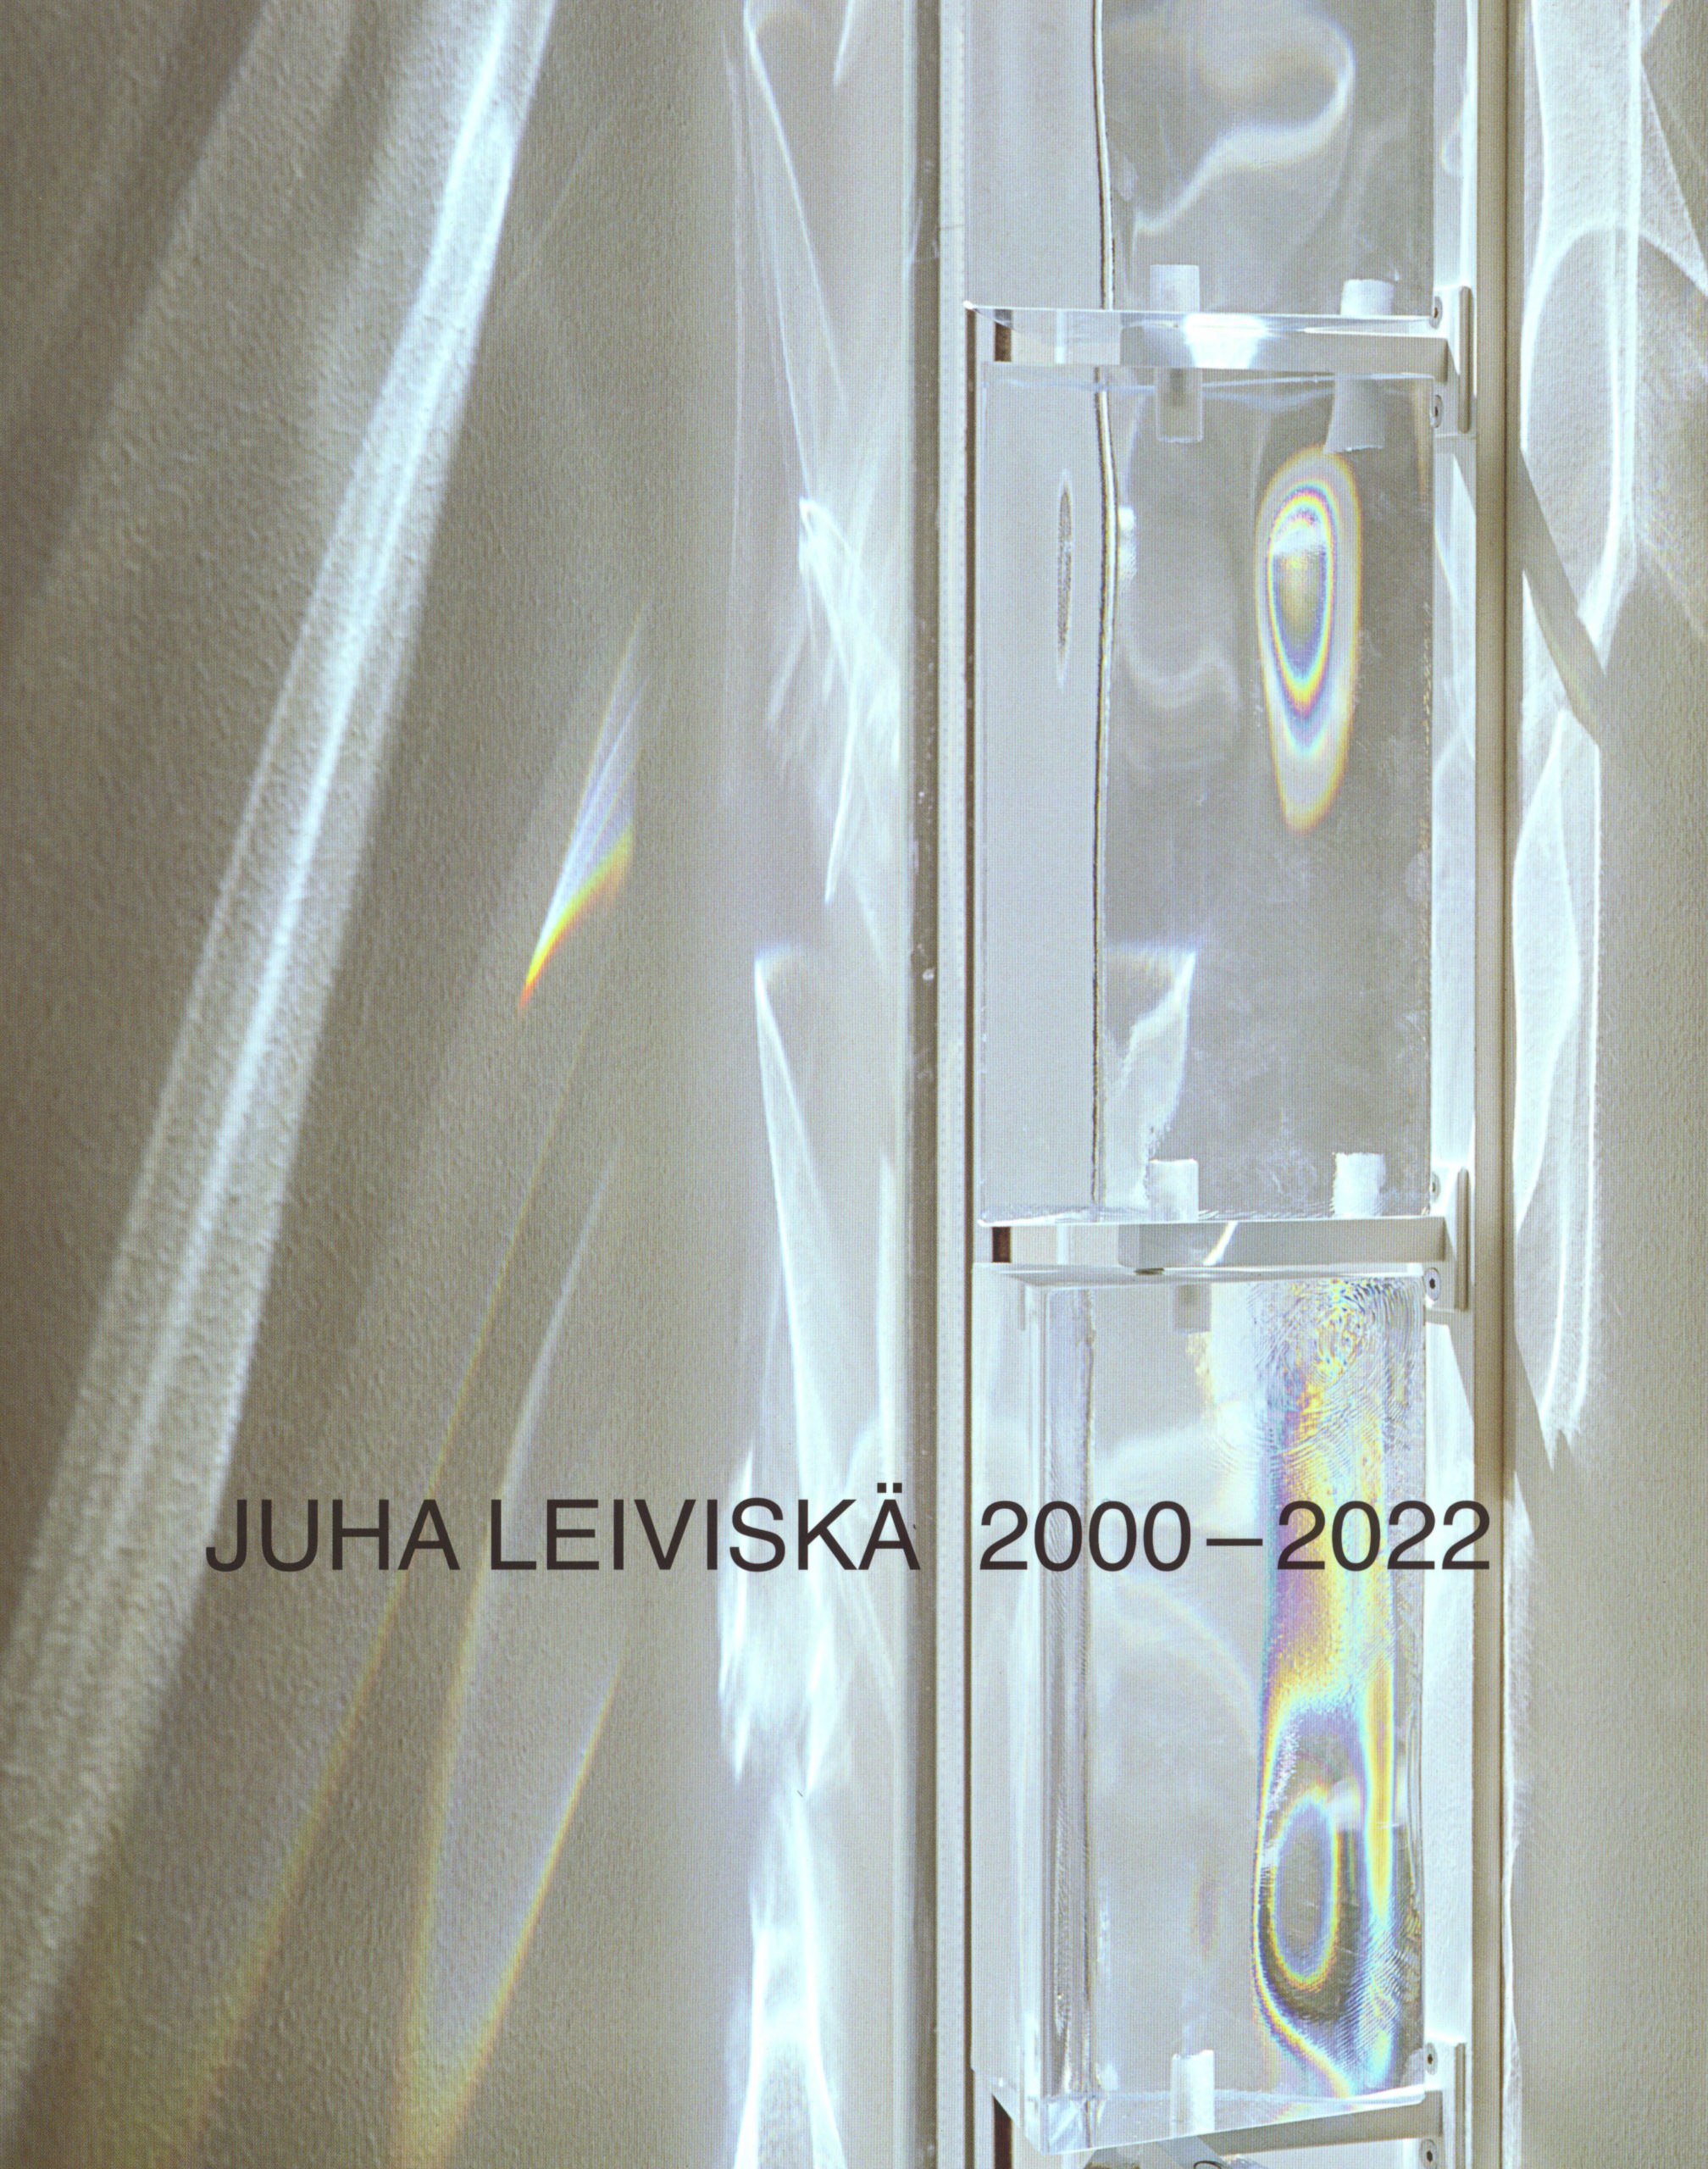 Juha Leiviskä 2000–2022